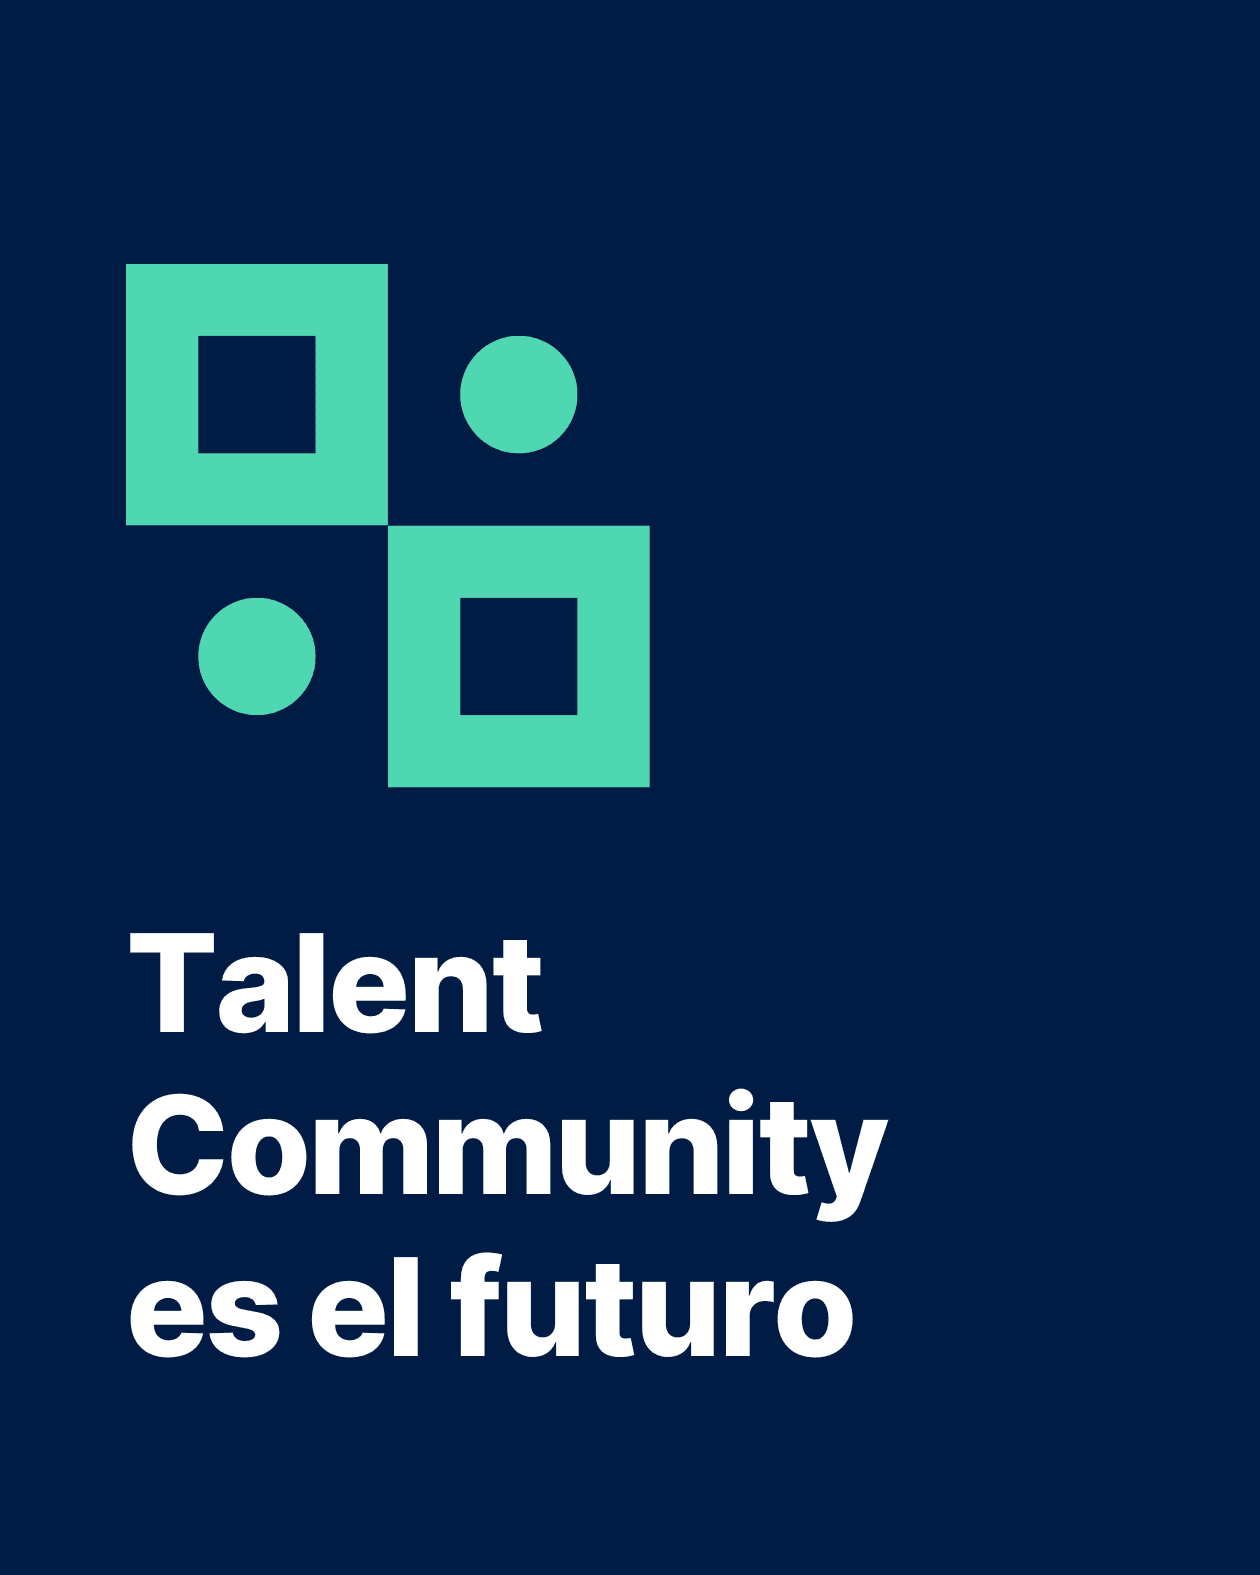 Portada de blog sobre Talent Community